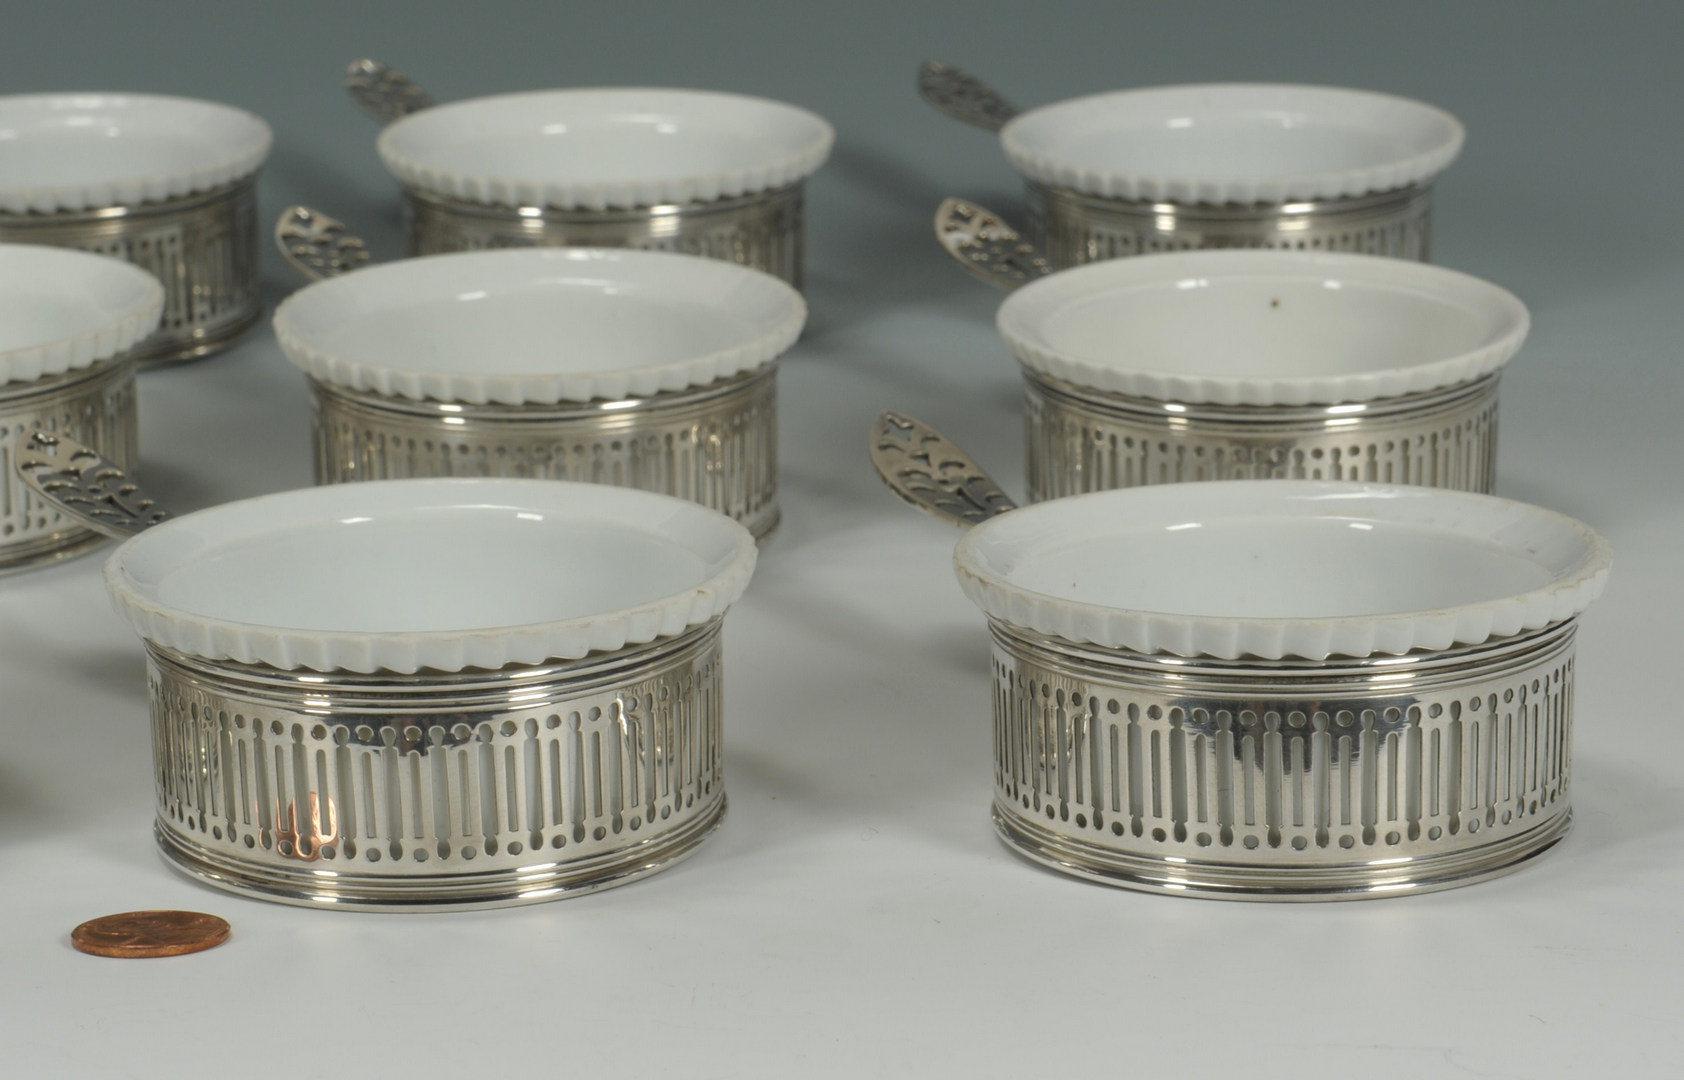 Lot 419: Set of 12 Gorham sterling and porcelain ramekins